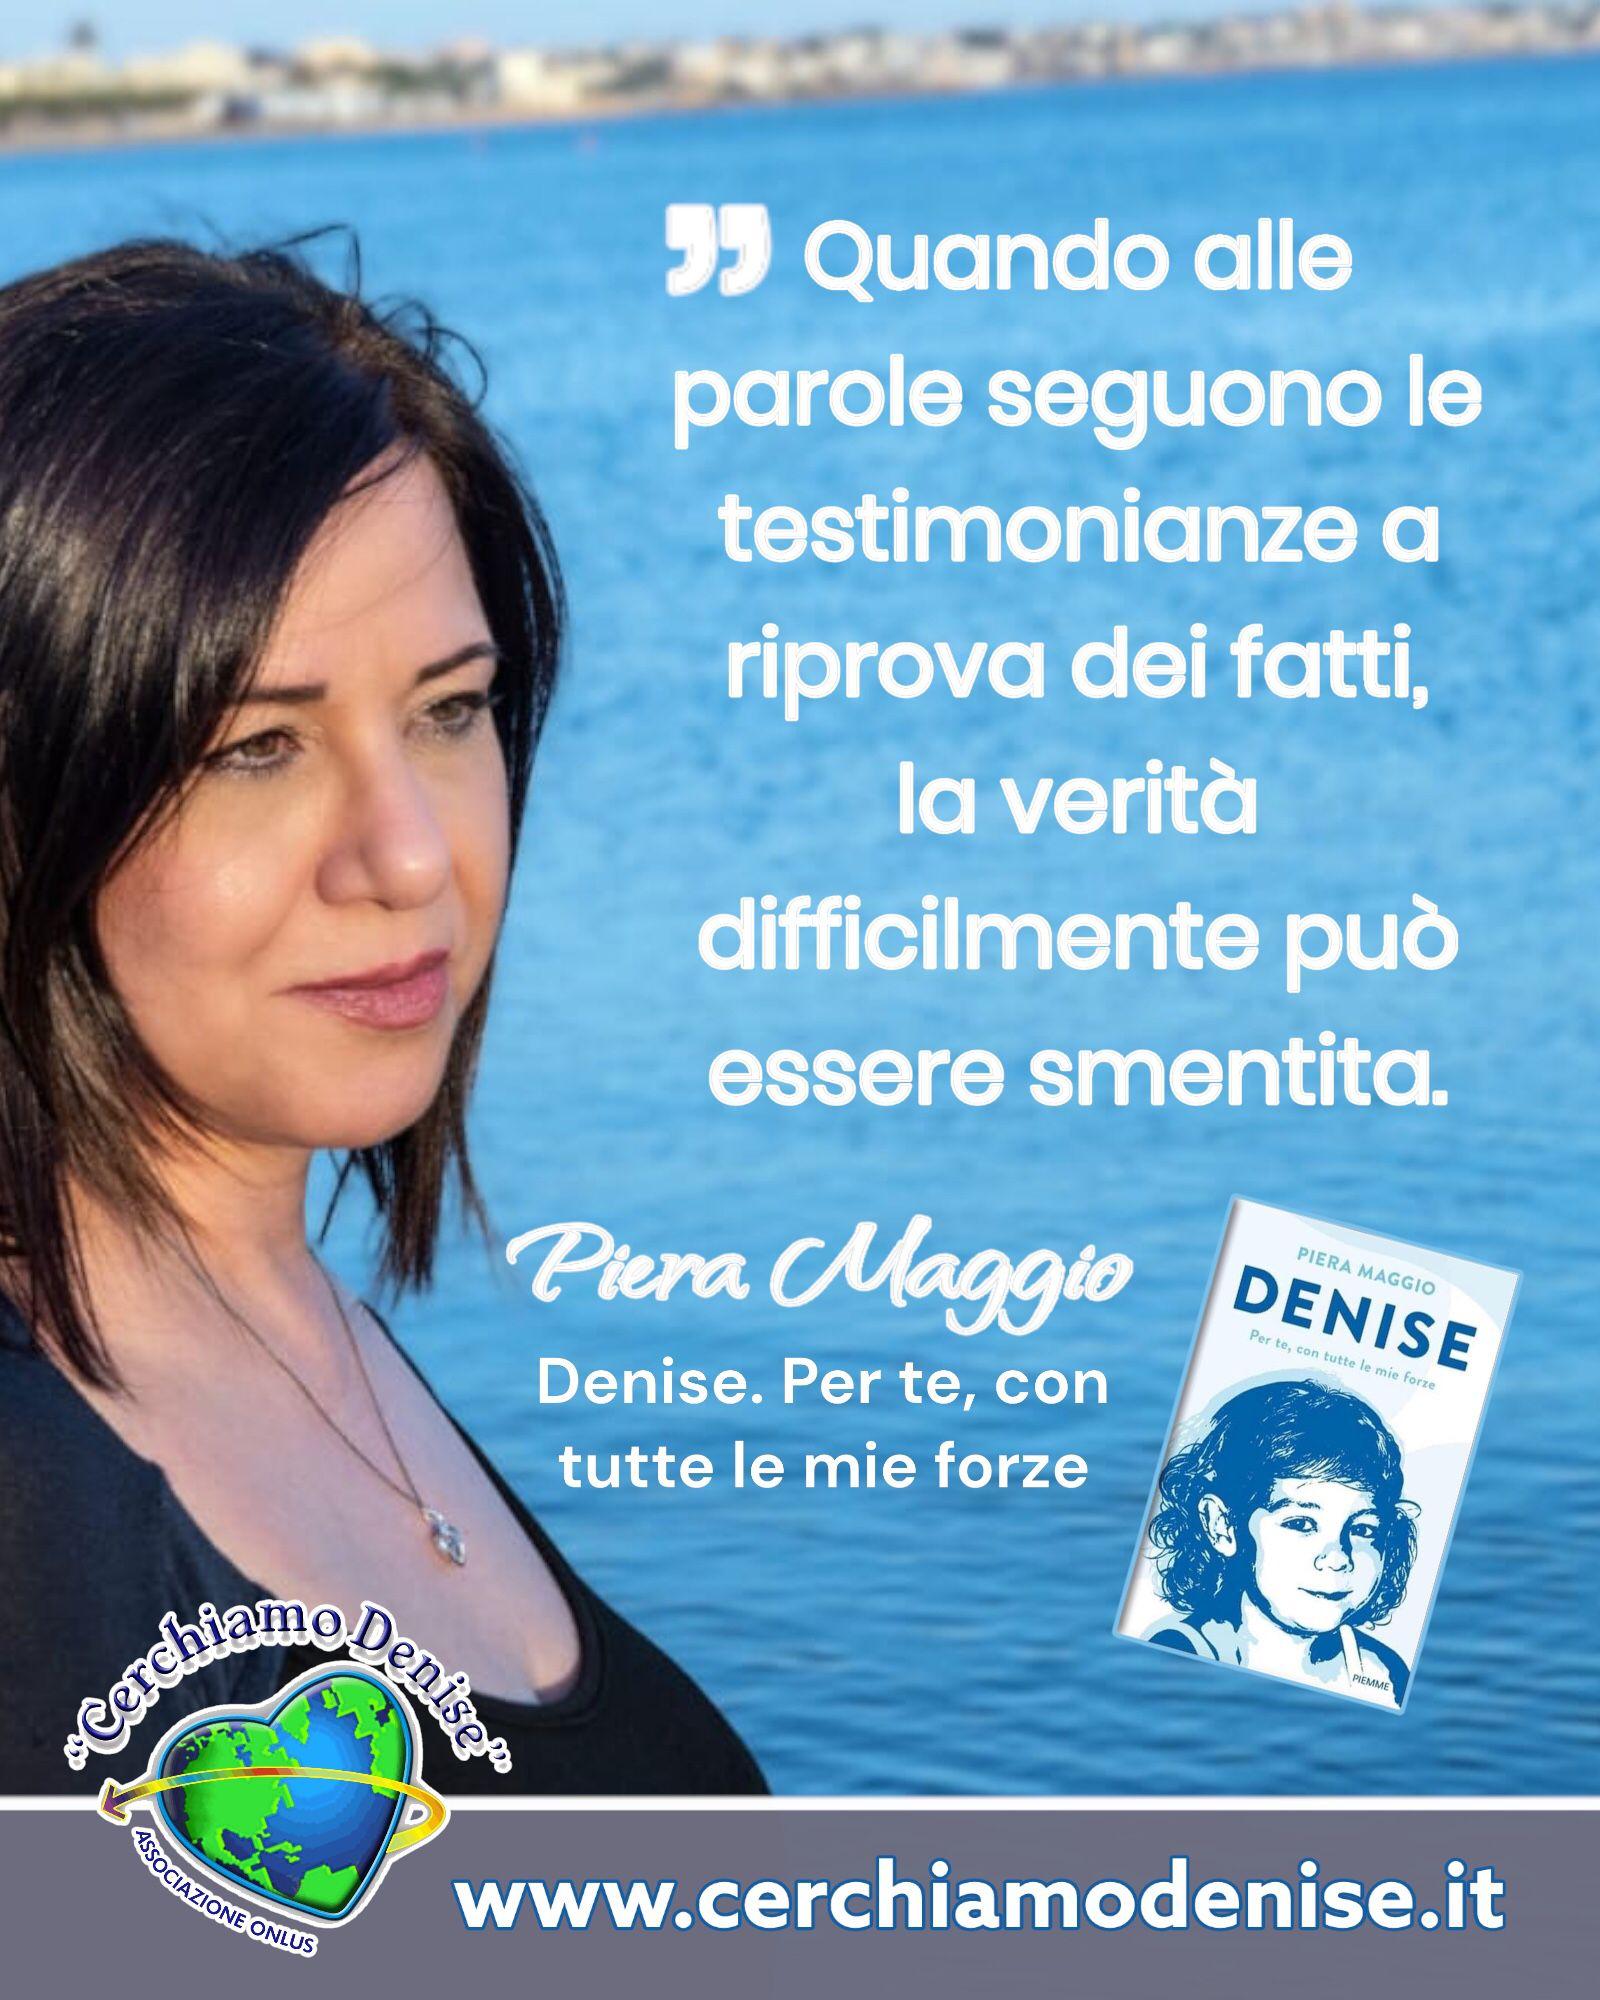 Piera Maggio: "La verità difficilmente può essere smentita"